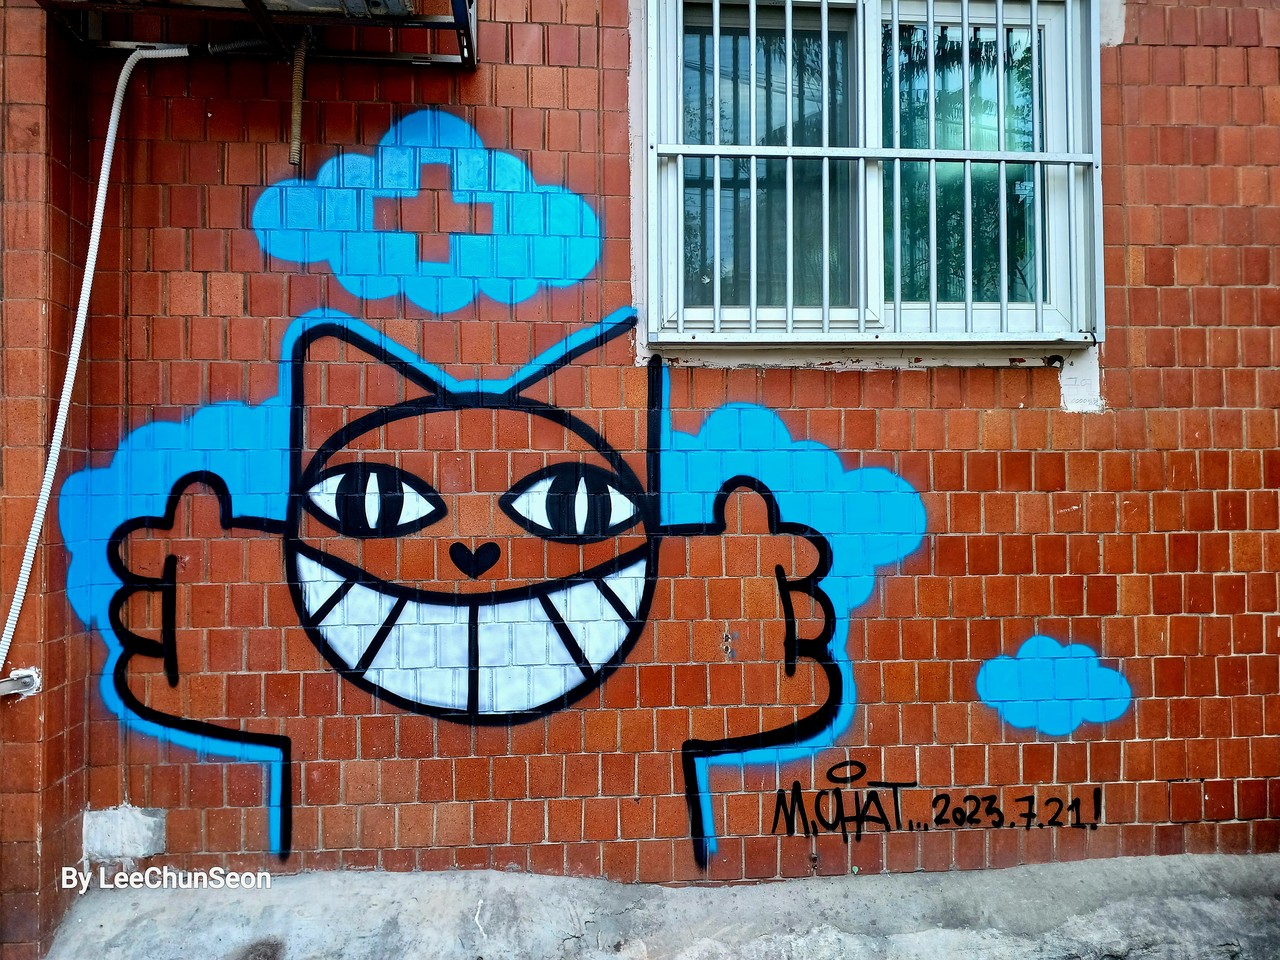 세계적 스트리트 아트 작가 토마 뷔유의 선물, '(십자마크) 고양이'가 응원하듯 환하게 웃고 있다.